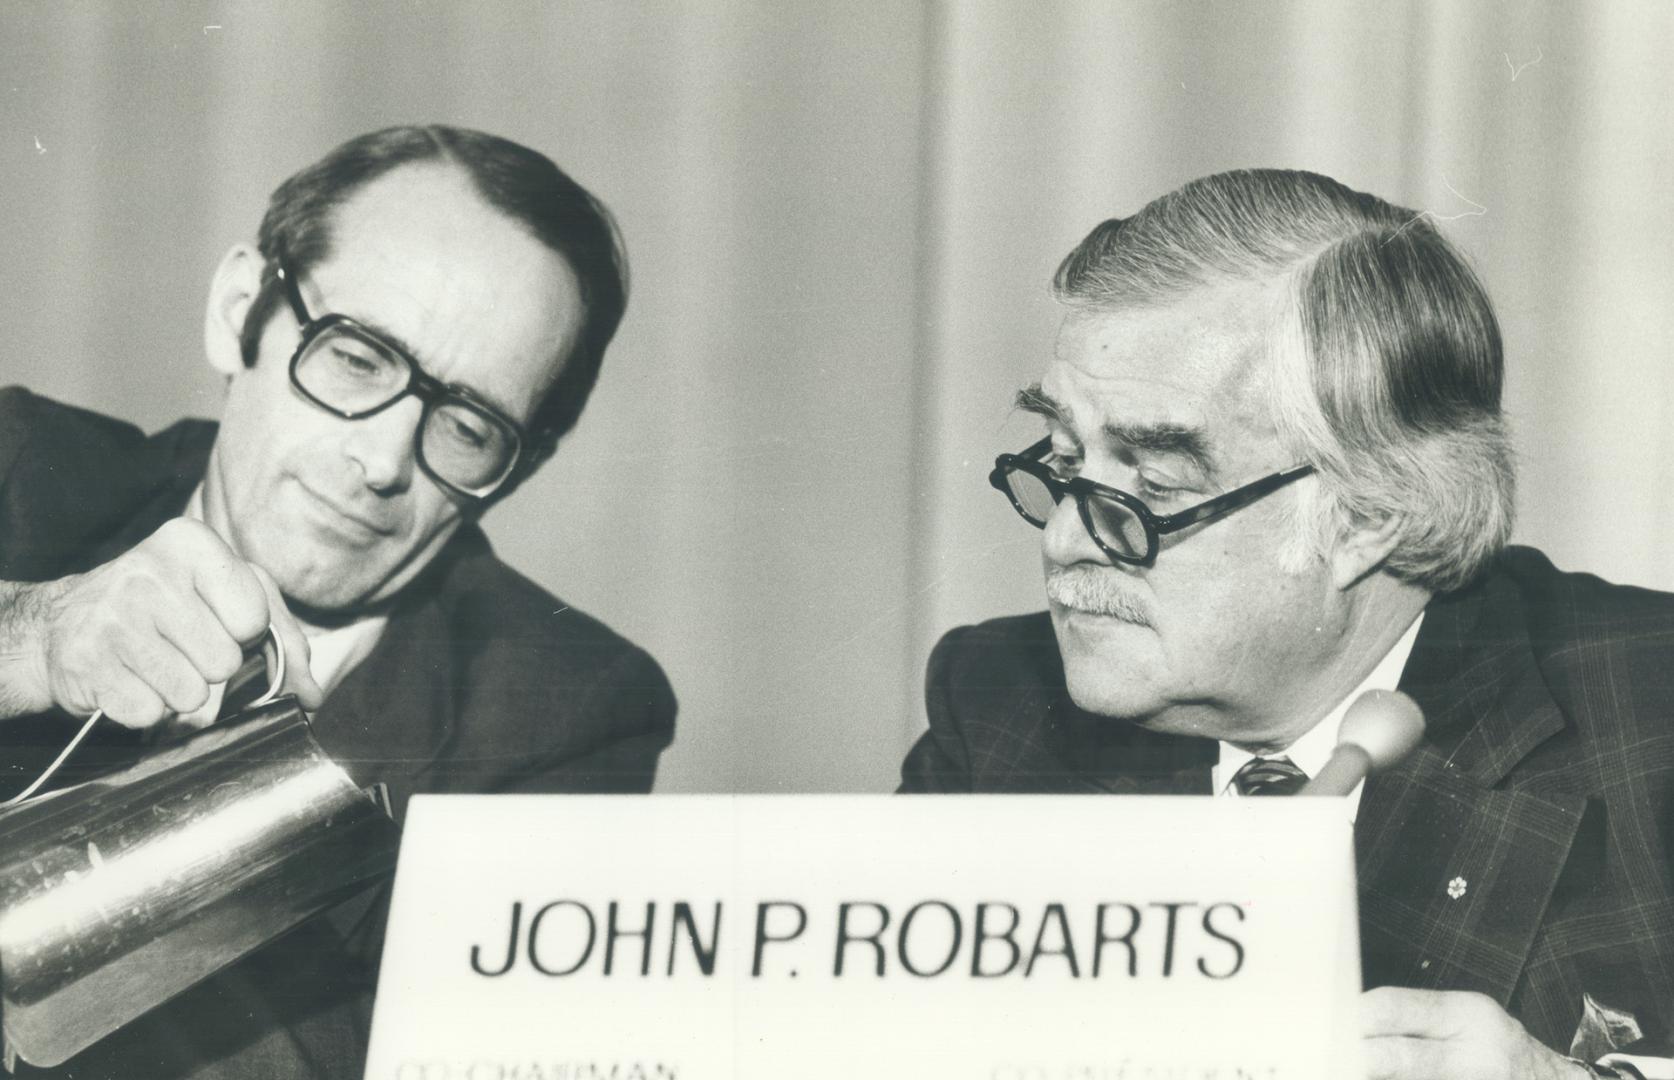 John P. Robarts